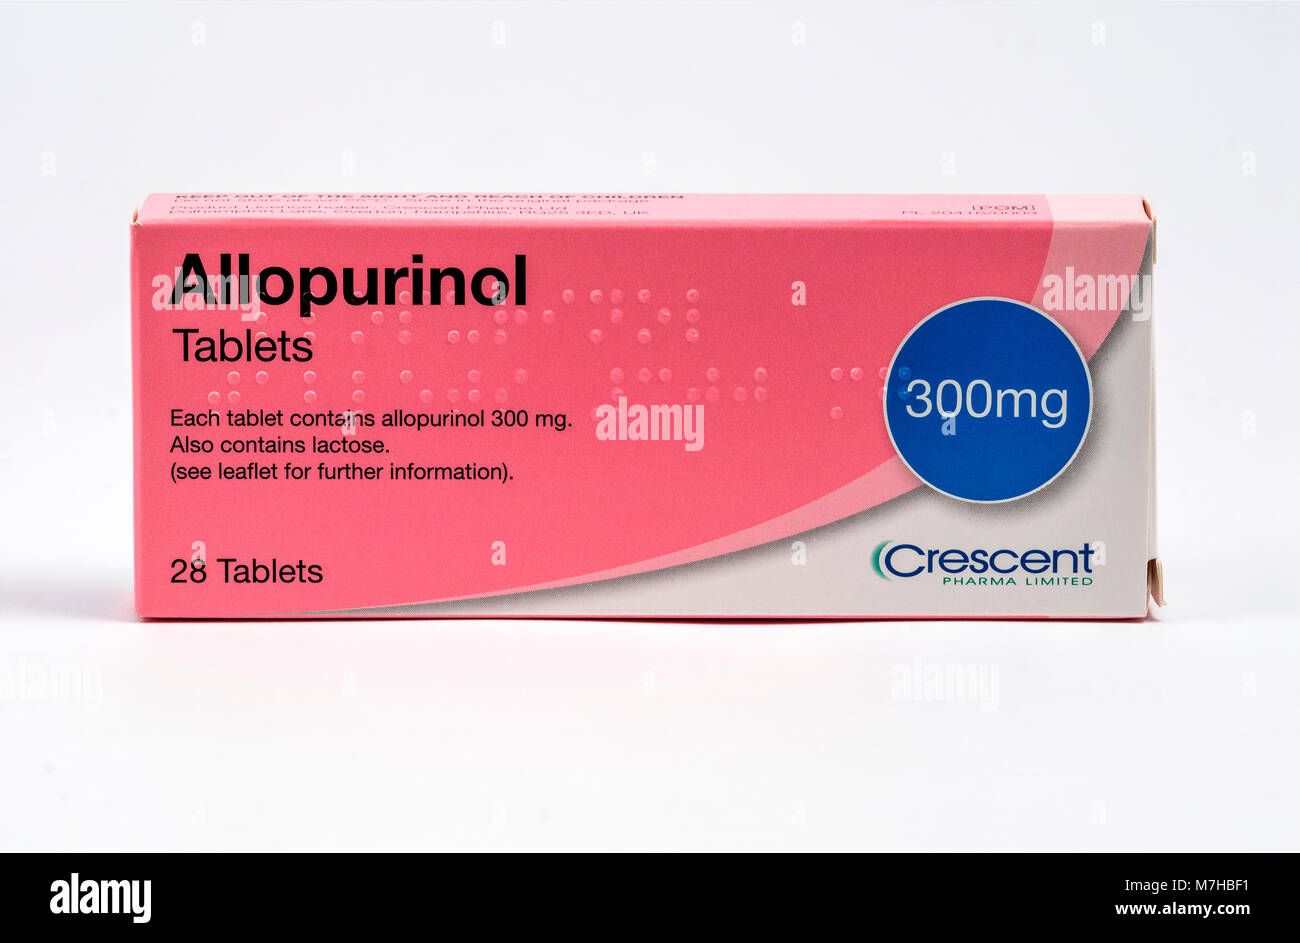 El alopurinol, un medicamento utilizado para disminuir los niveles de ácido úrico elevado en la sangre. Es un inhibidor de la xantina oxidasa. Foto de stock